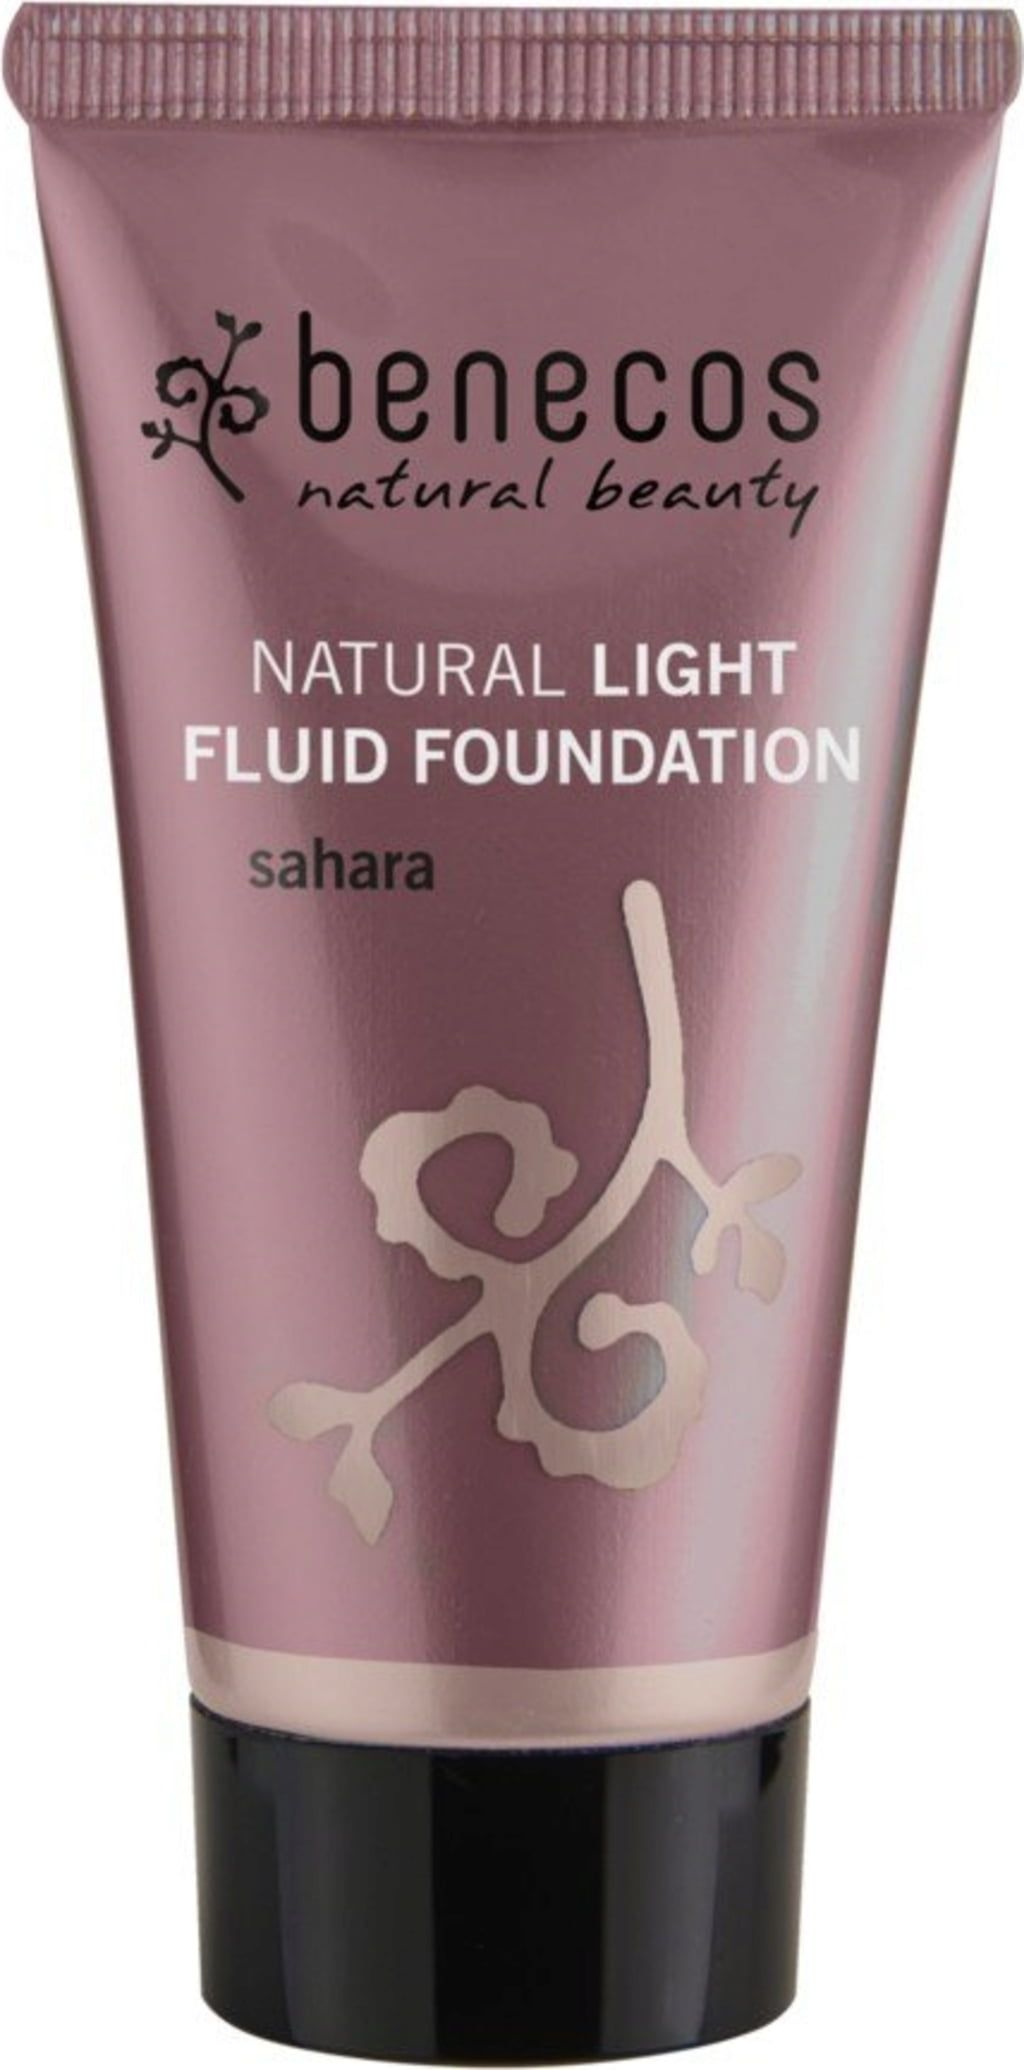 Natural Light Fluid Foundation - tekući puder - Sahara